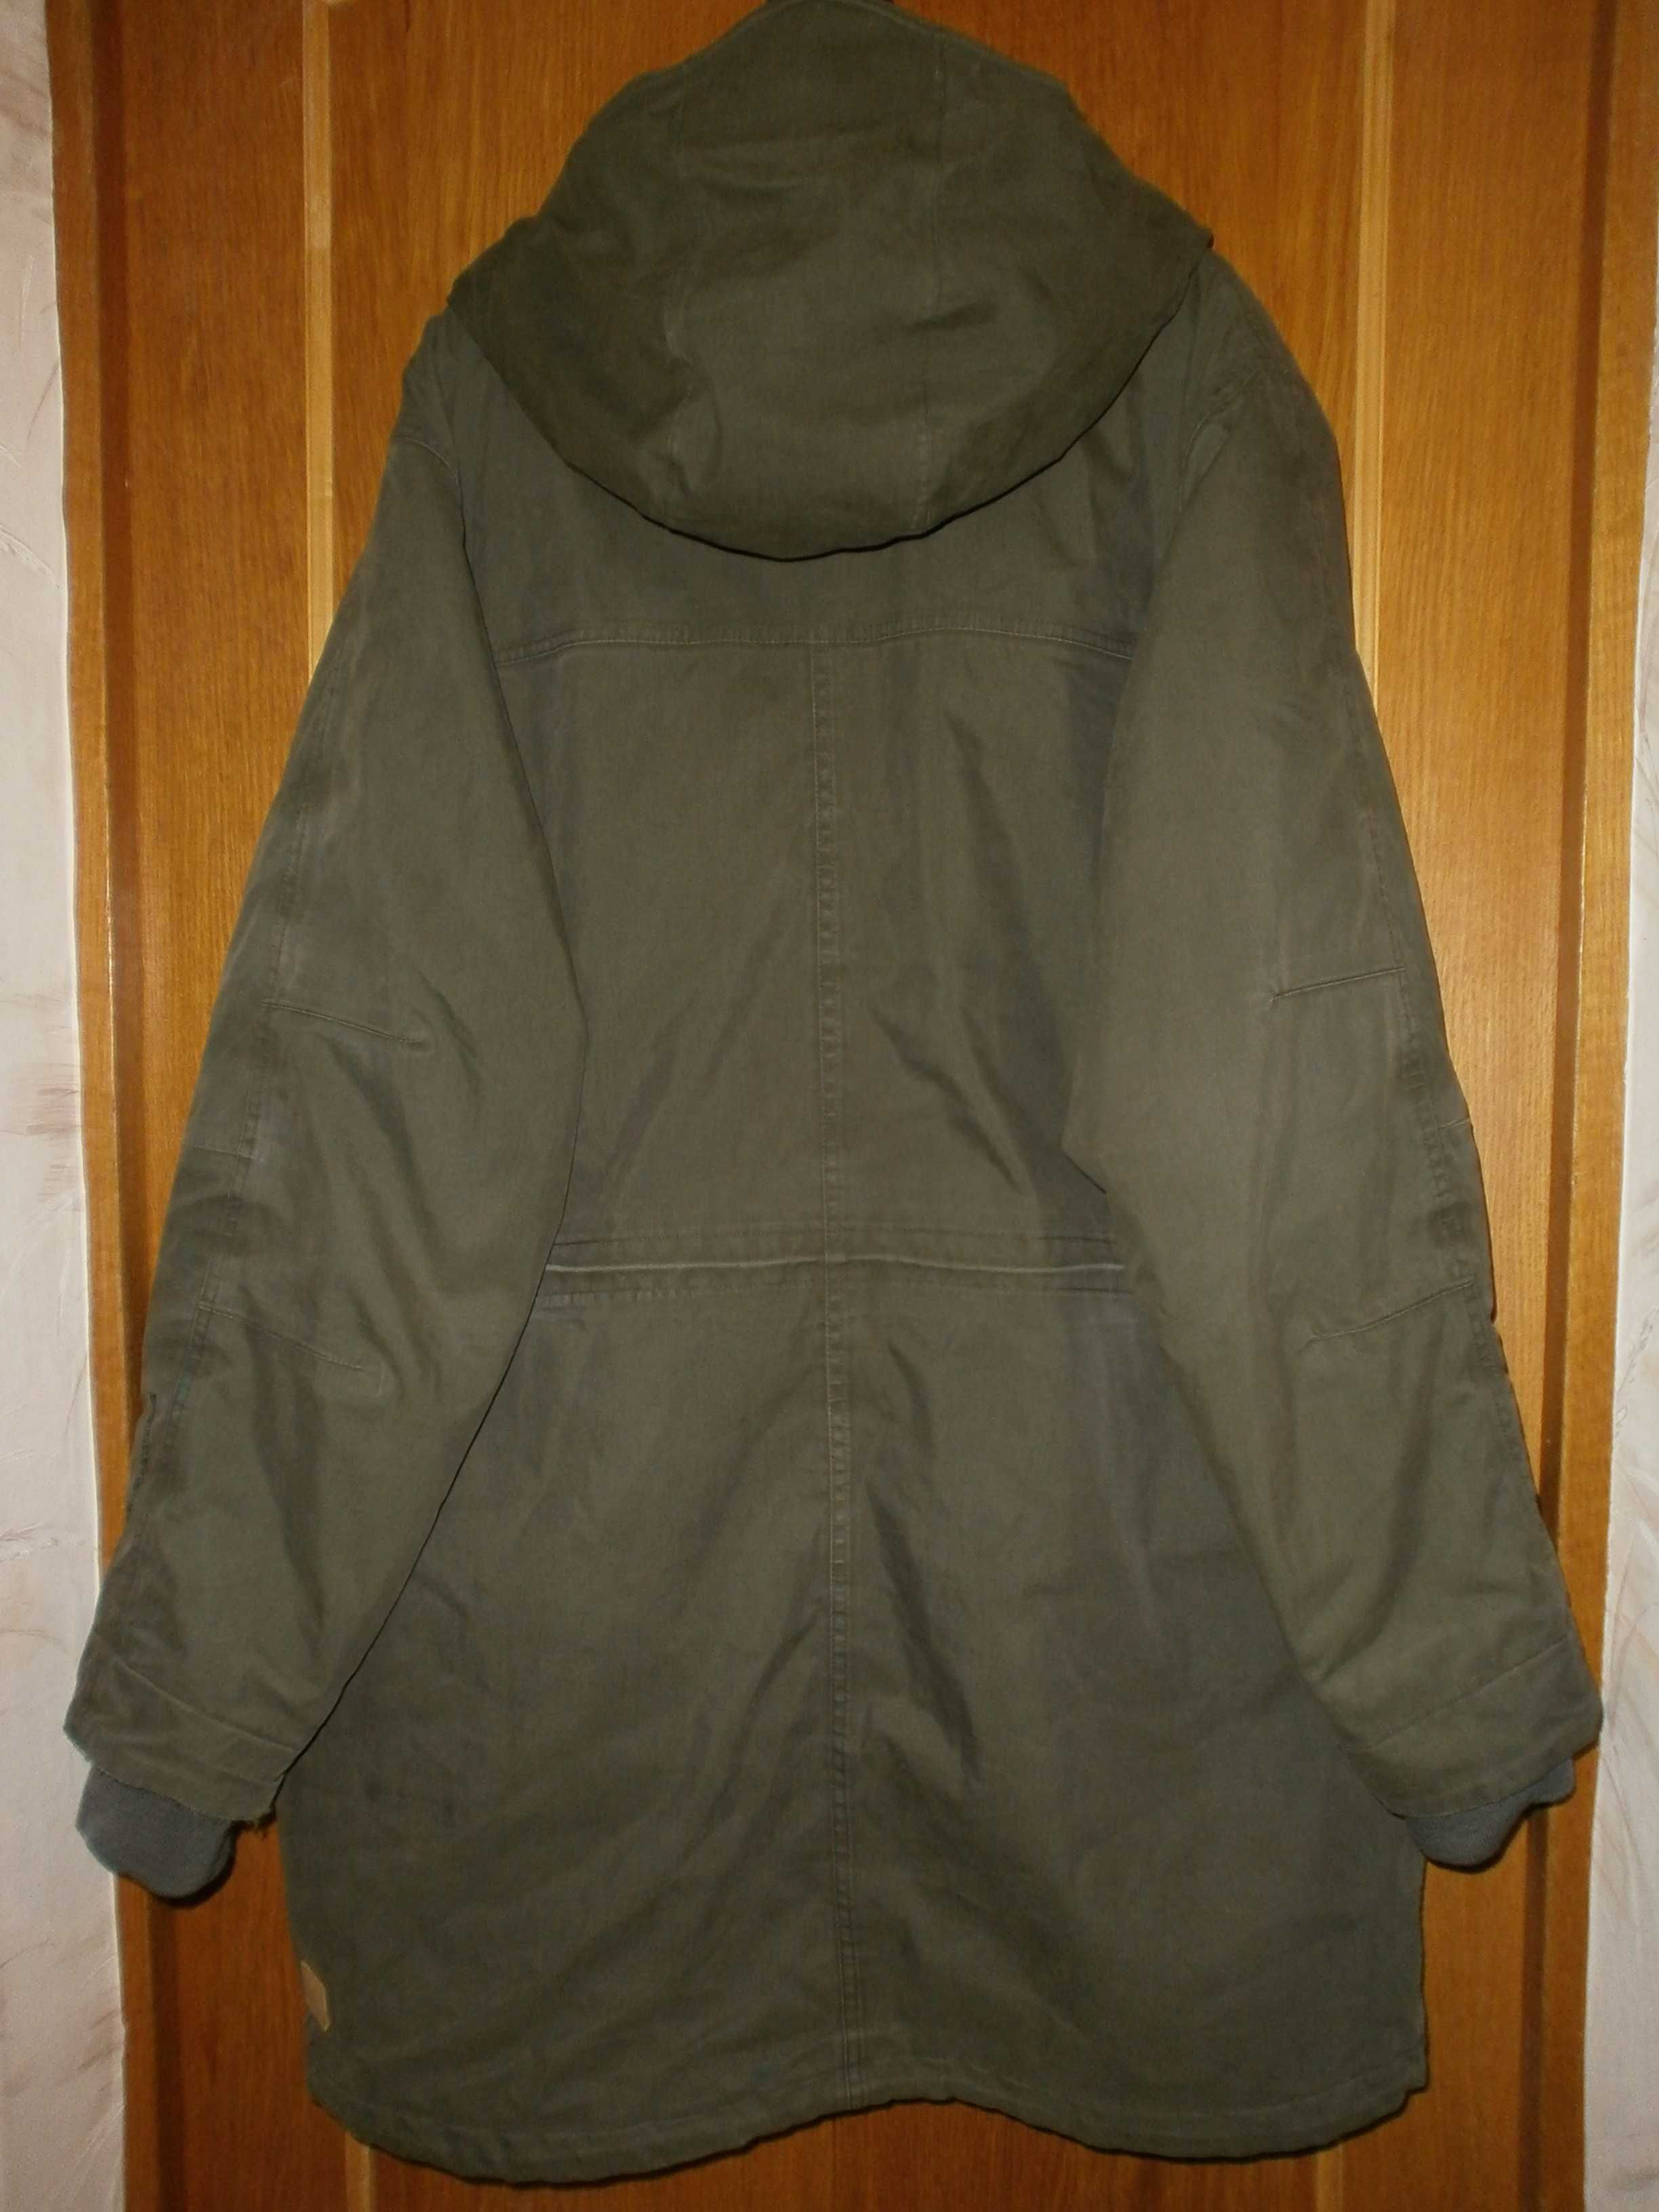 Куртка Next, олива, разм. XXL, наш 56-58. ПОГ-70 см. Демисезонная